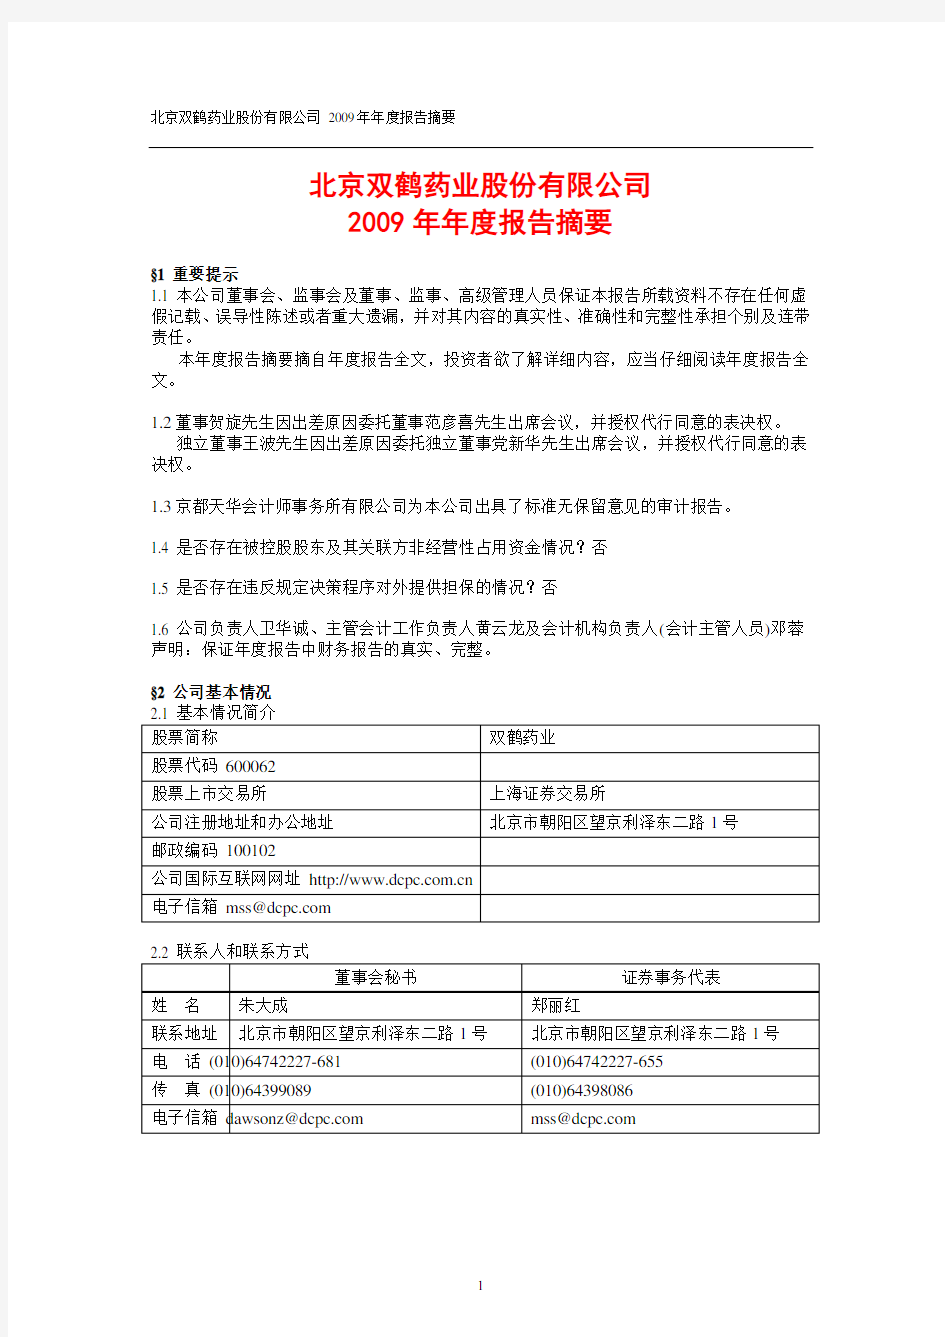 北京双鹤药业股份有限公司2009年年度报告摘要